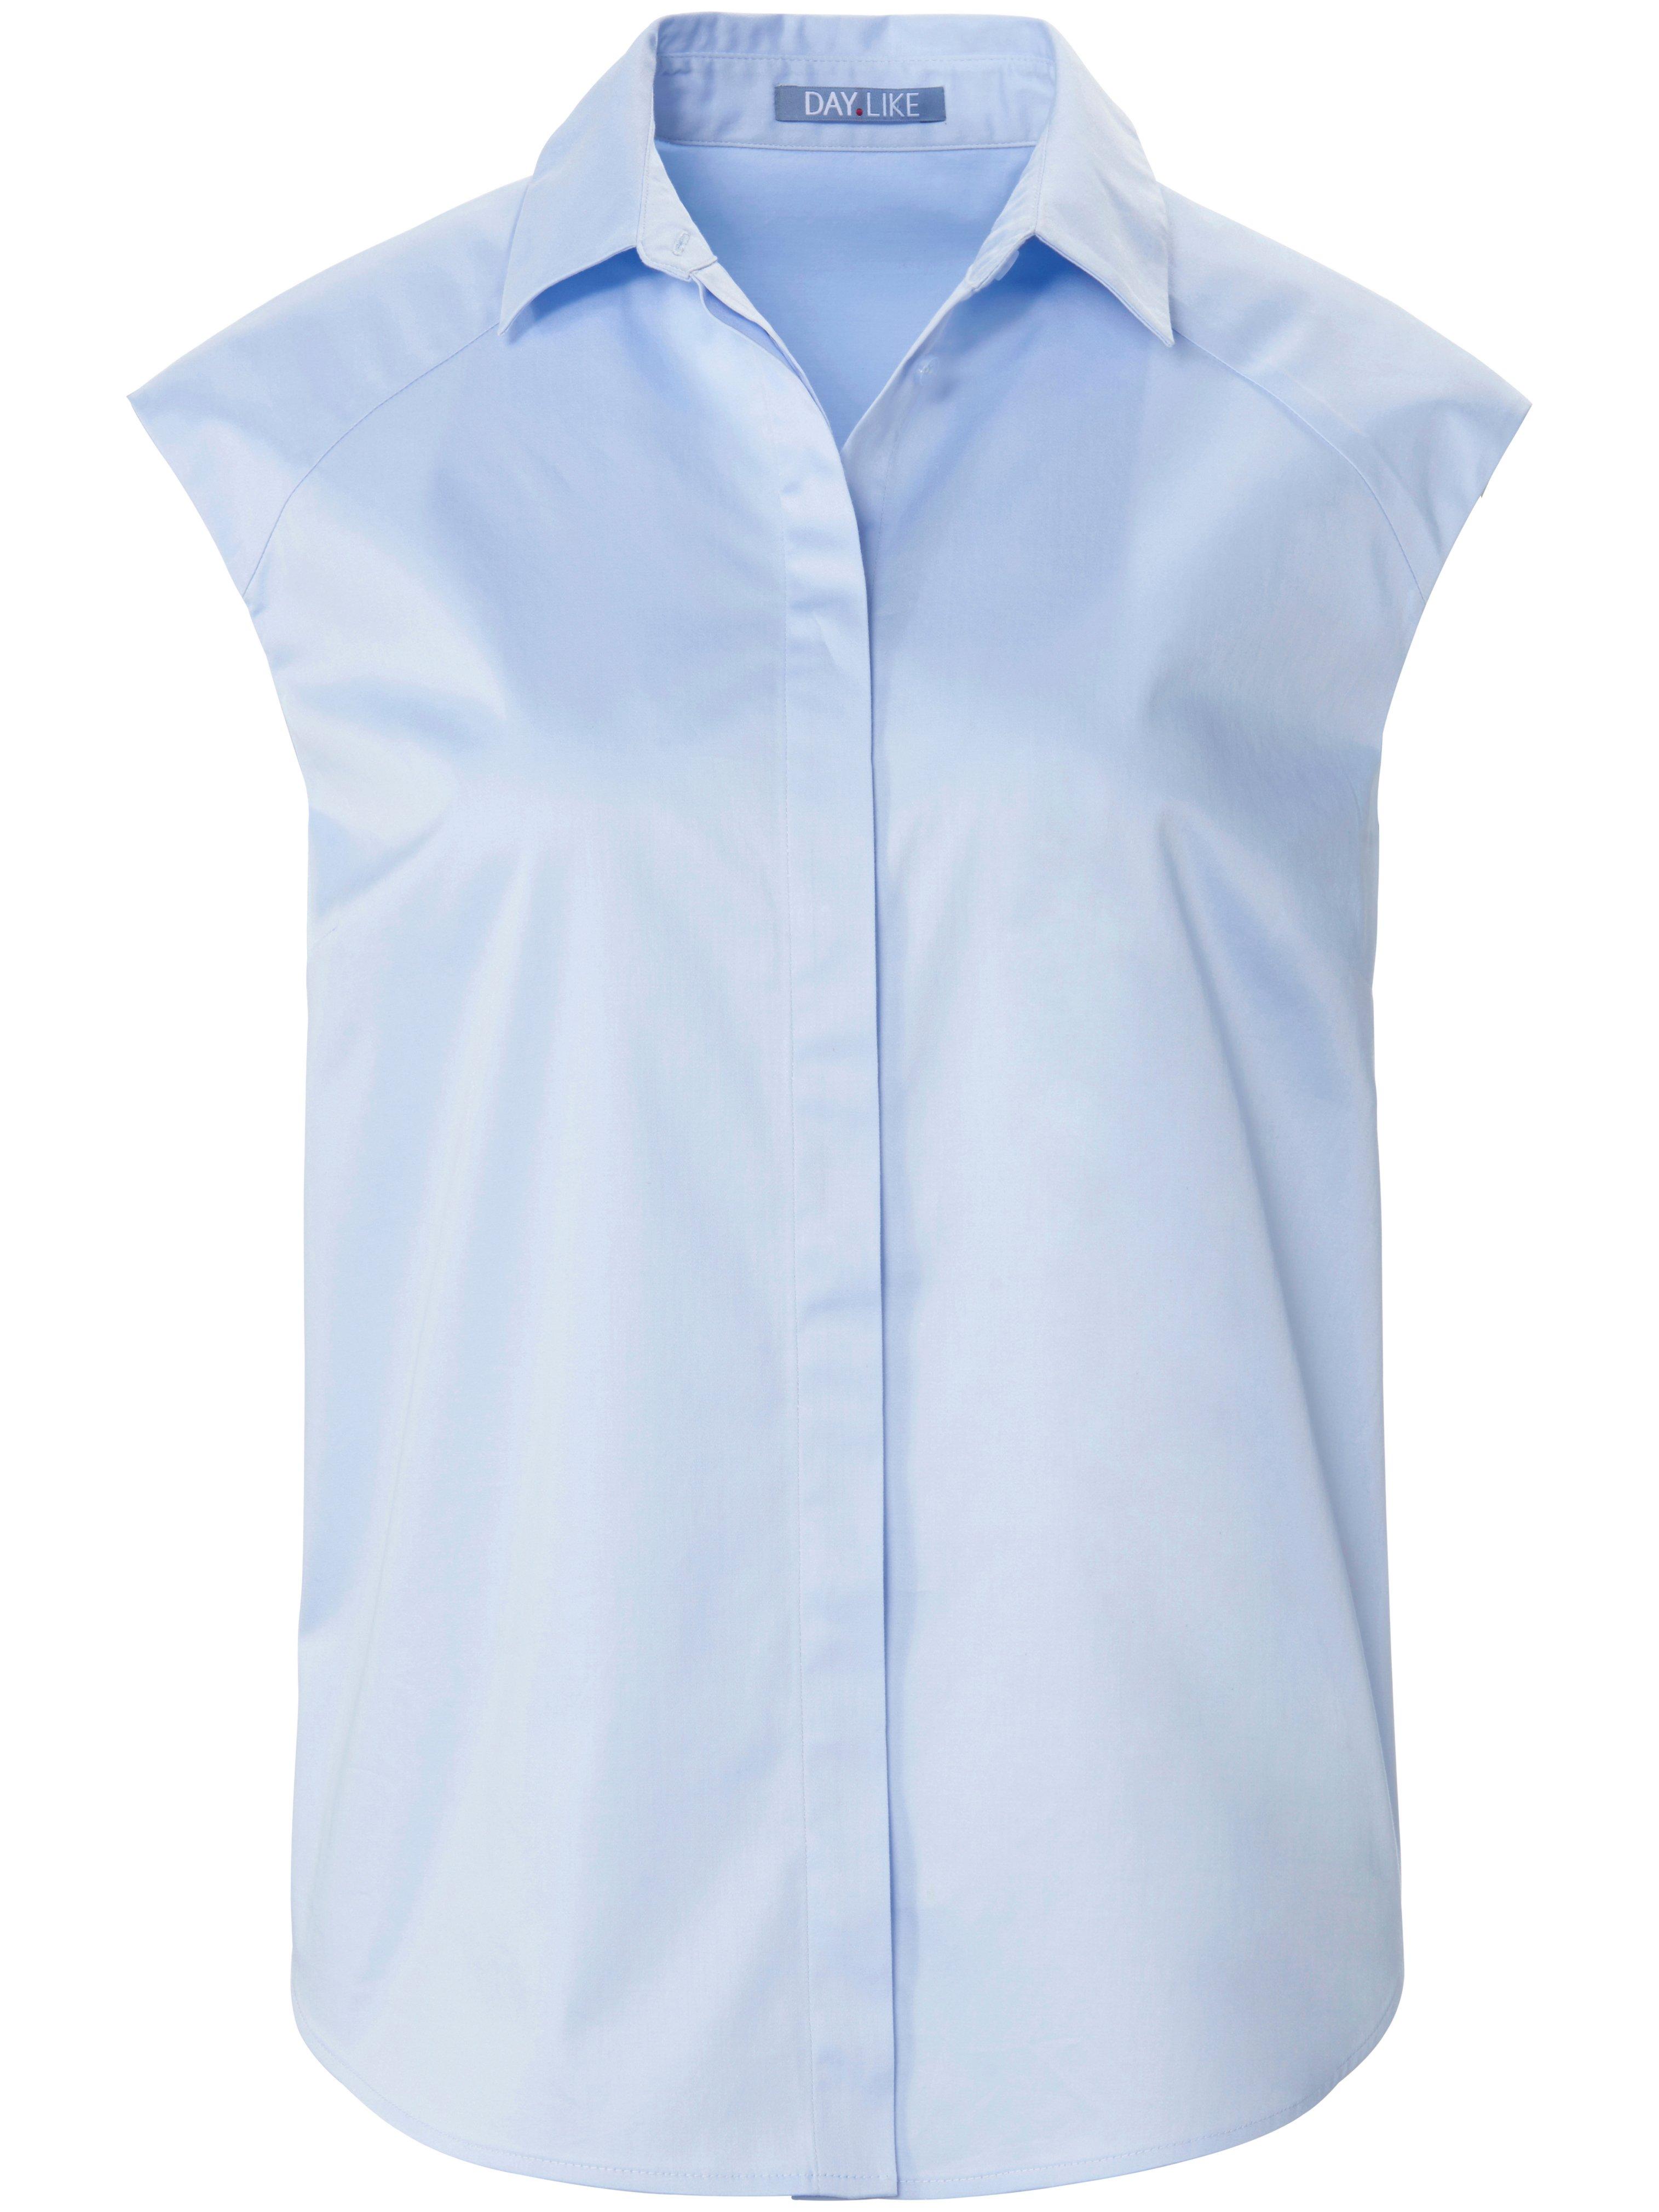 Mouwloze blouse overhemdkraag Van DAY.LIKE blauw